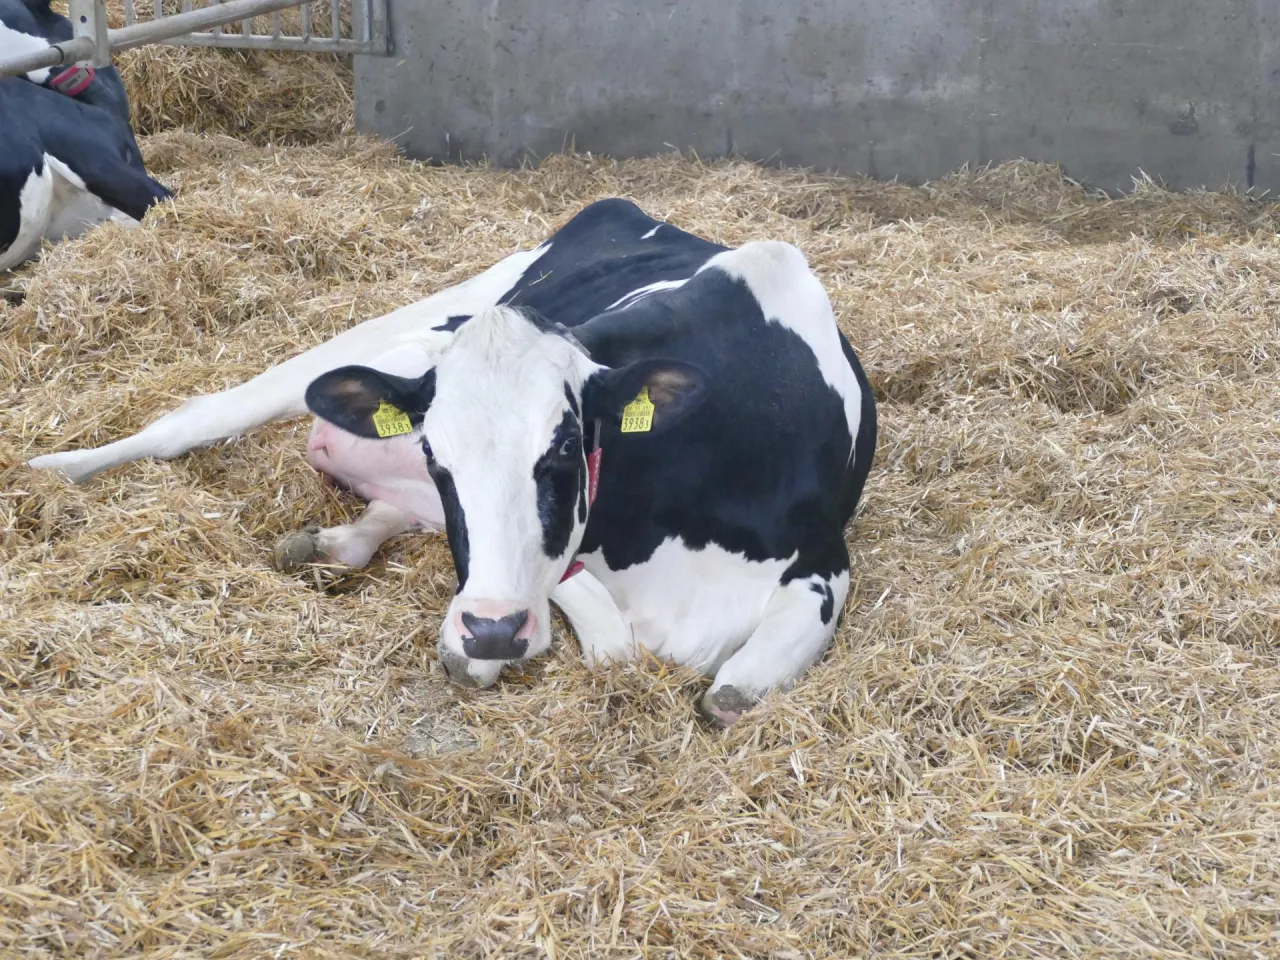 &lt;p&gt;Krowy w ciężkiej ketozie miały o 54% większe ryzyko wczesnej śmierci zarodków niż zwierzęta z najmniej ciężką ketozą&lt;/p&gt;